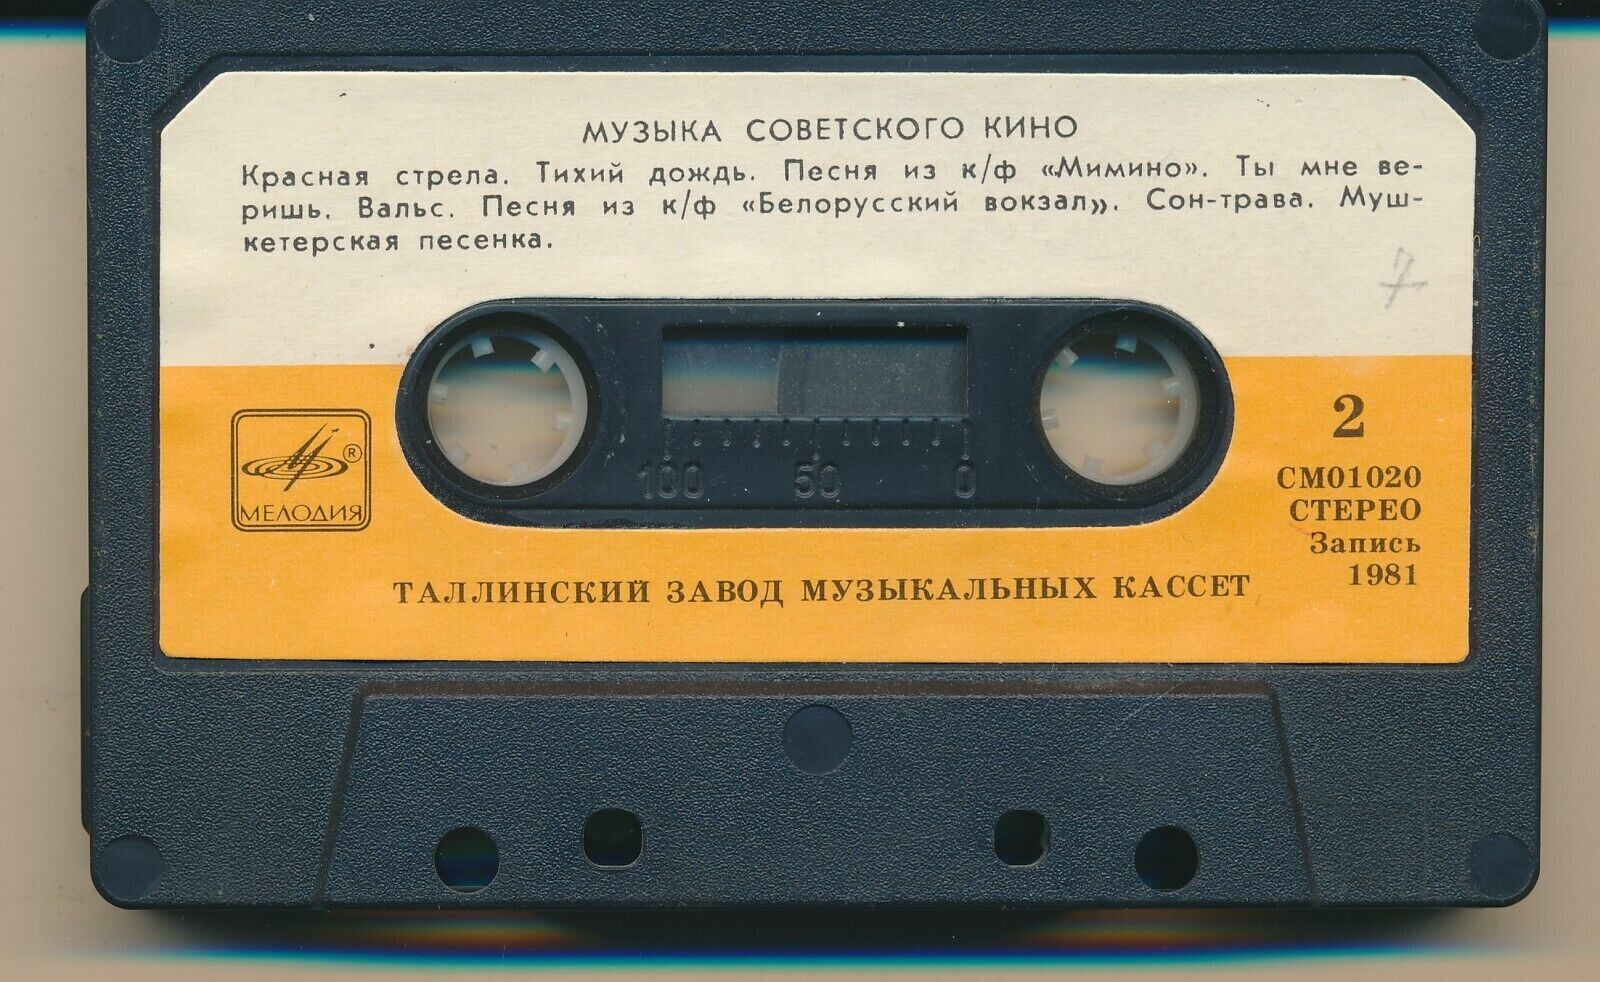 Музыка советского кино